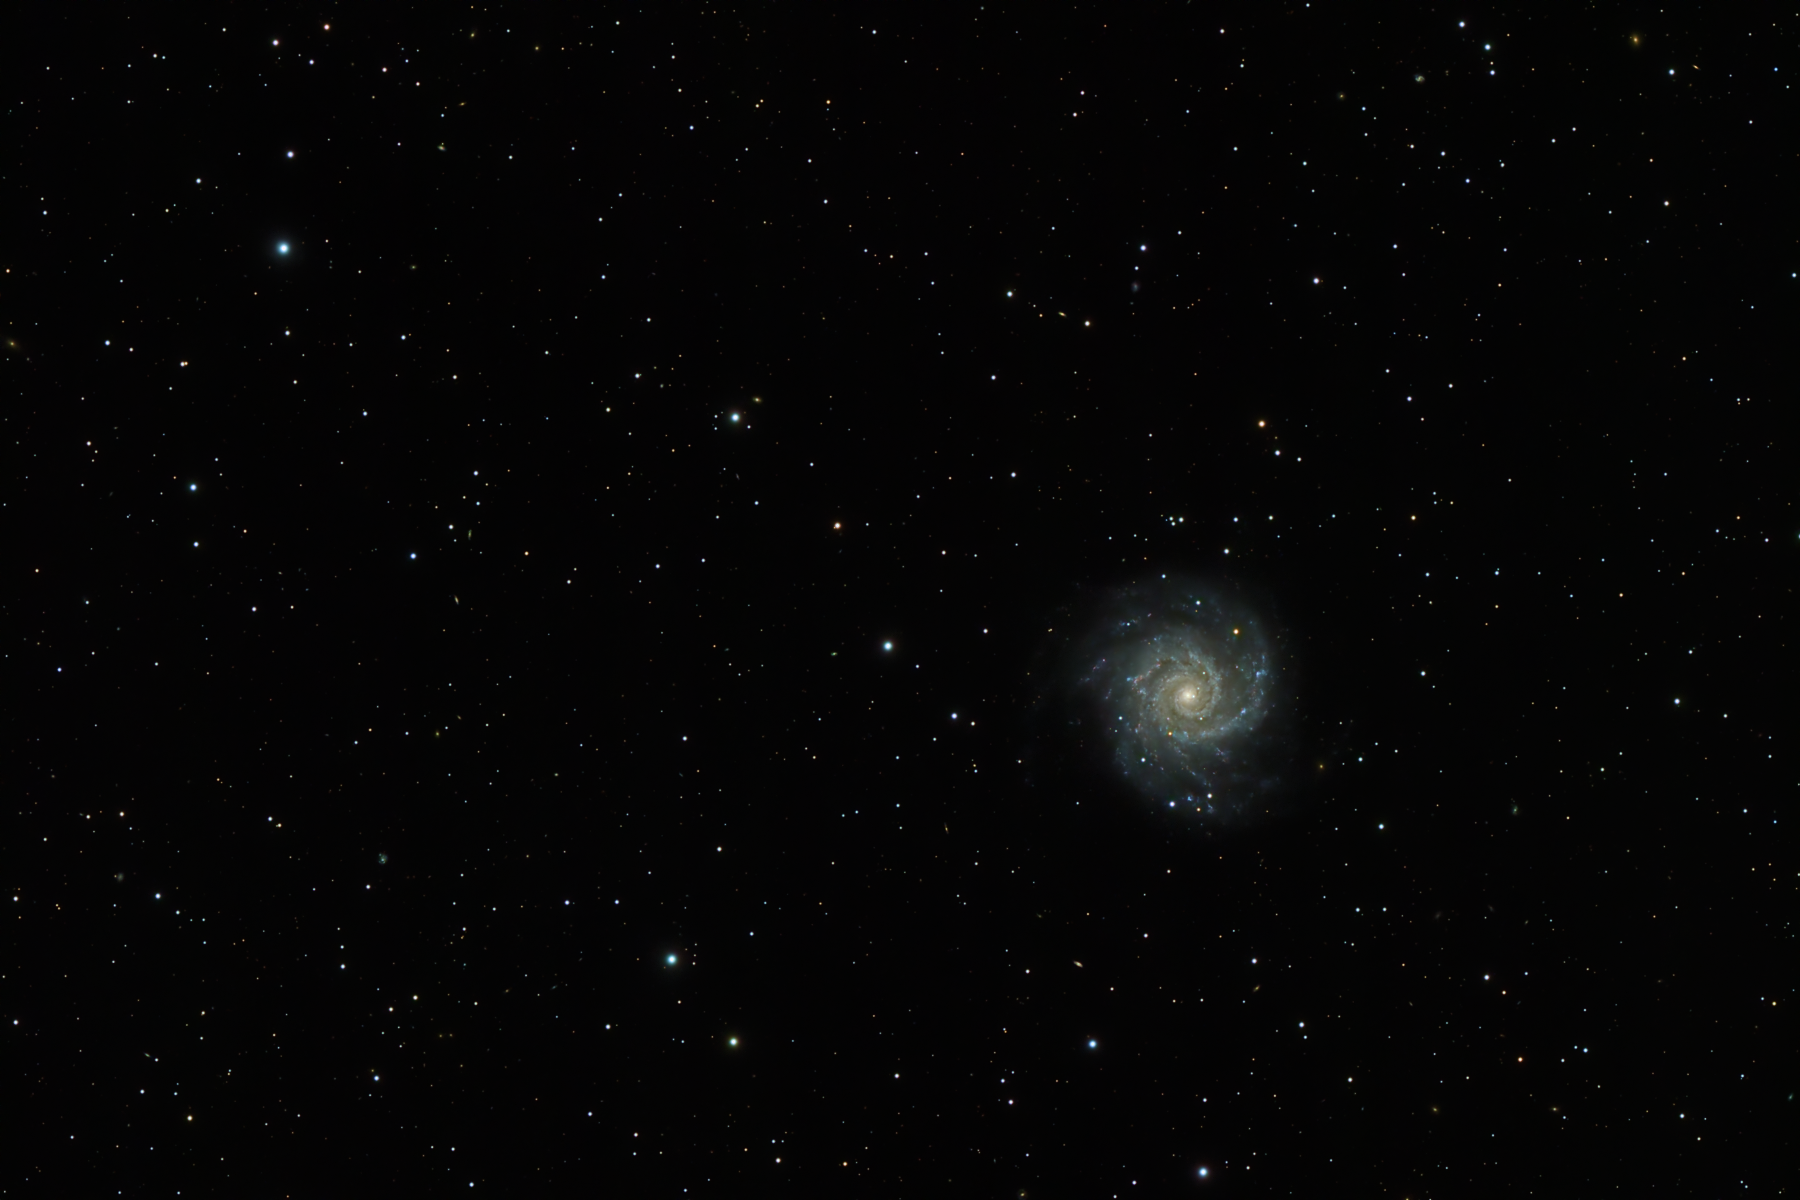 NGC 628 or M74